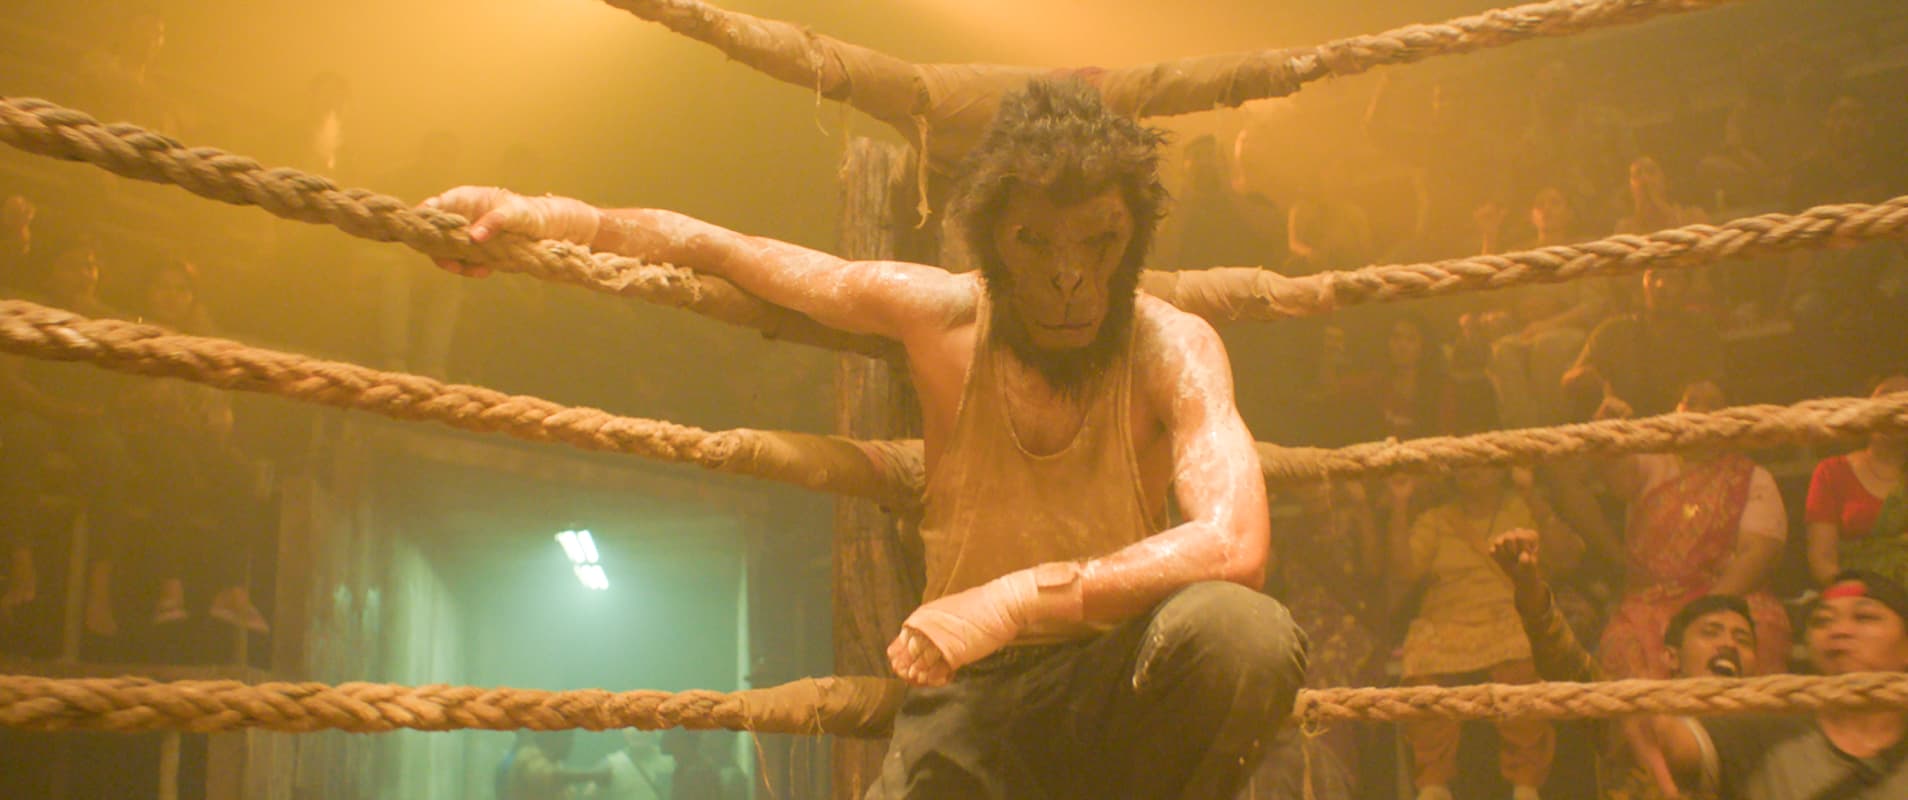 Monkey Man: Dev Patel - Photo: Universal Pictures